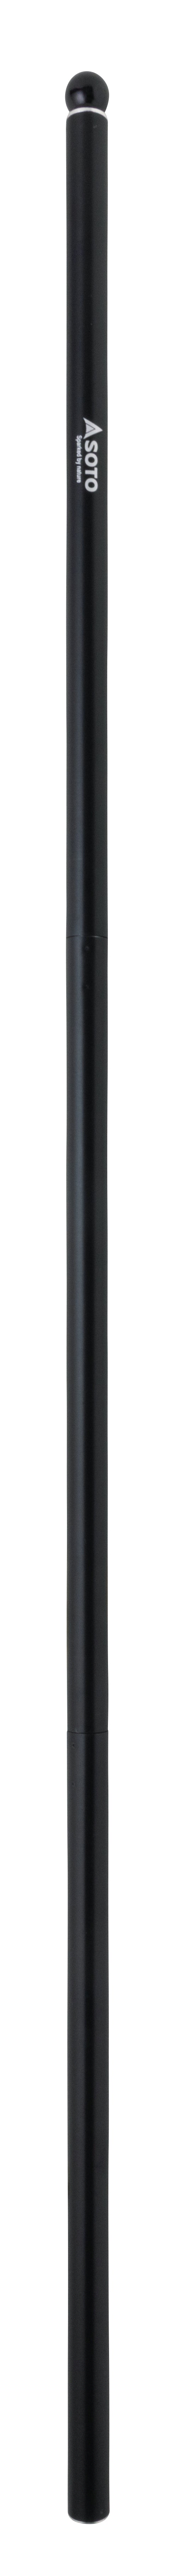 メインポール1.6m × φ28mm